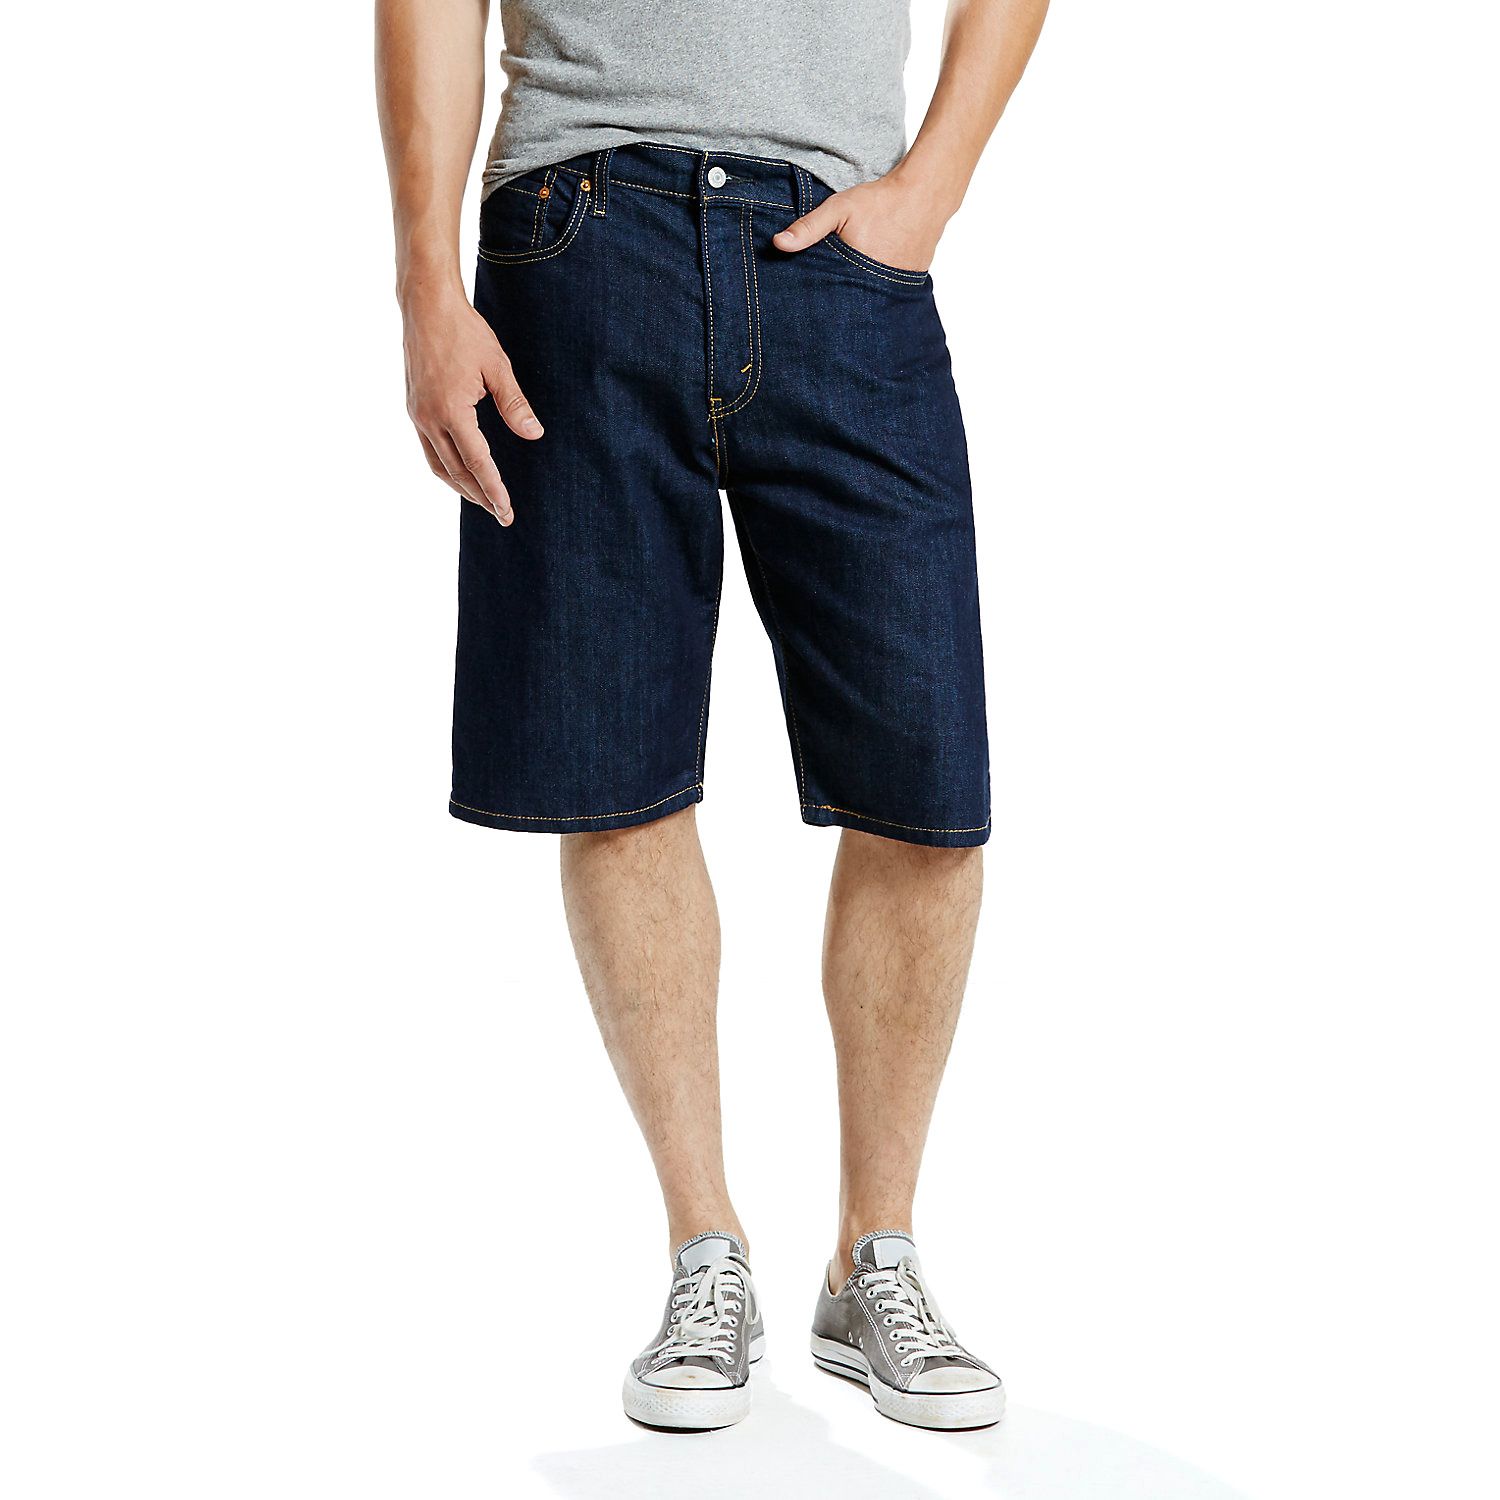 levis 569 shorts